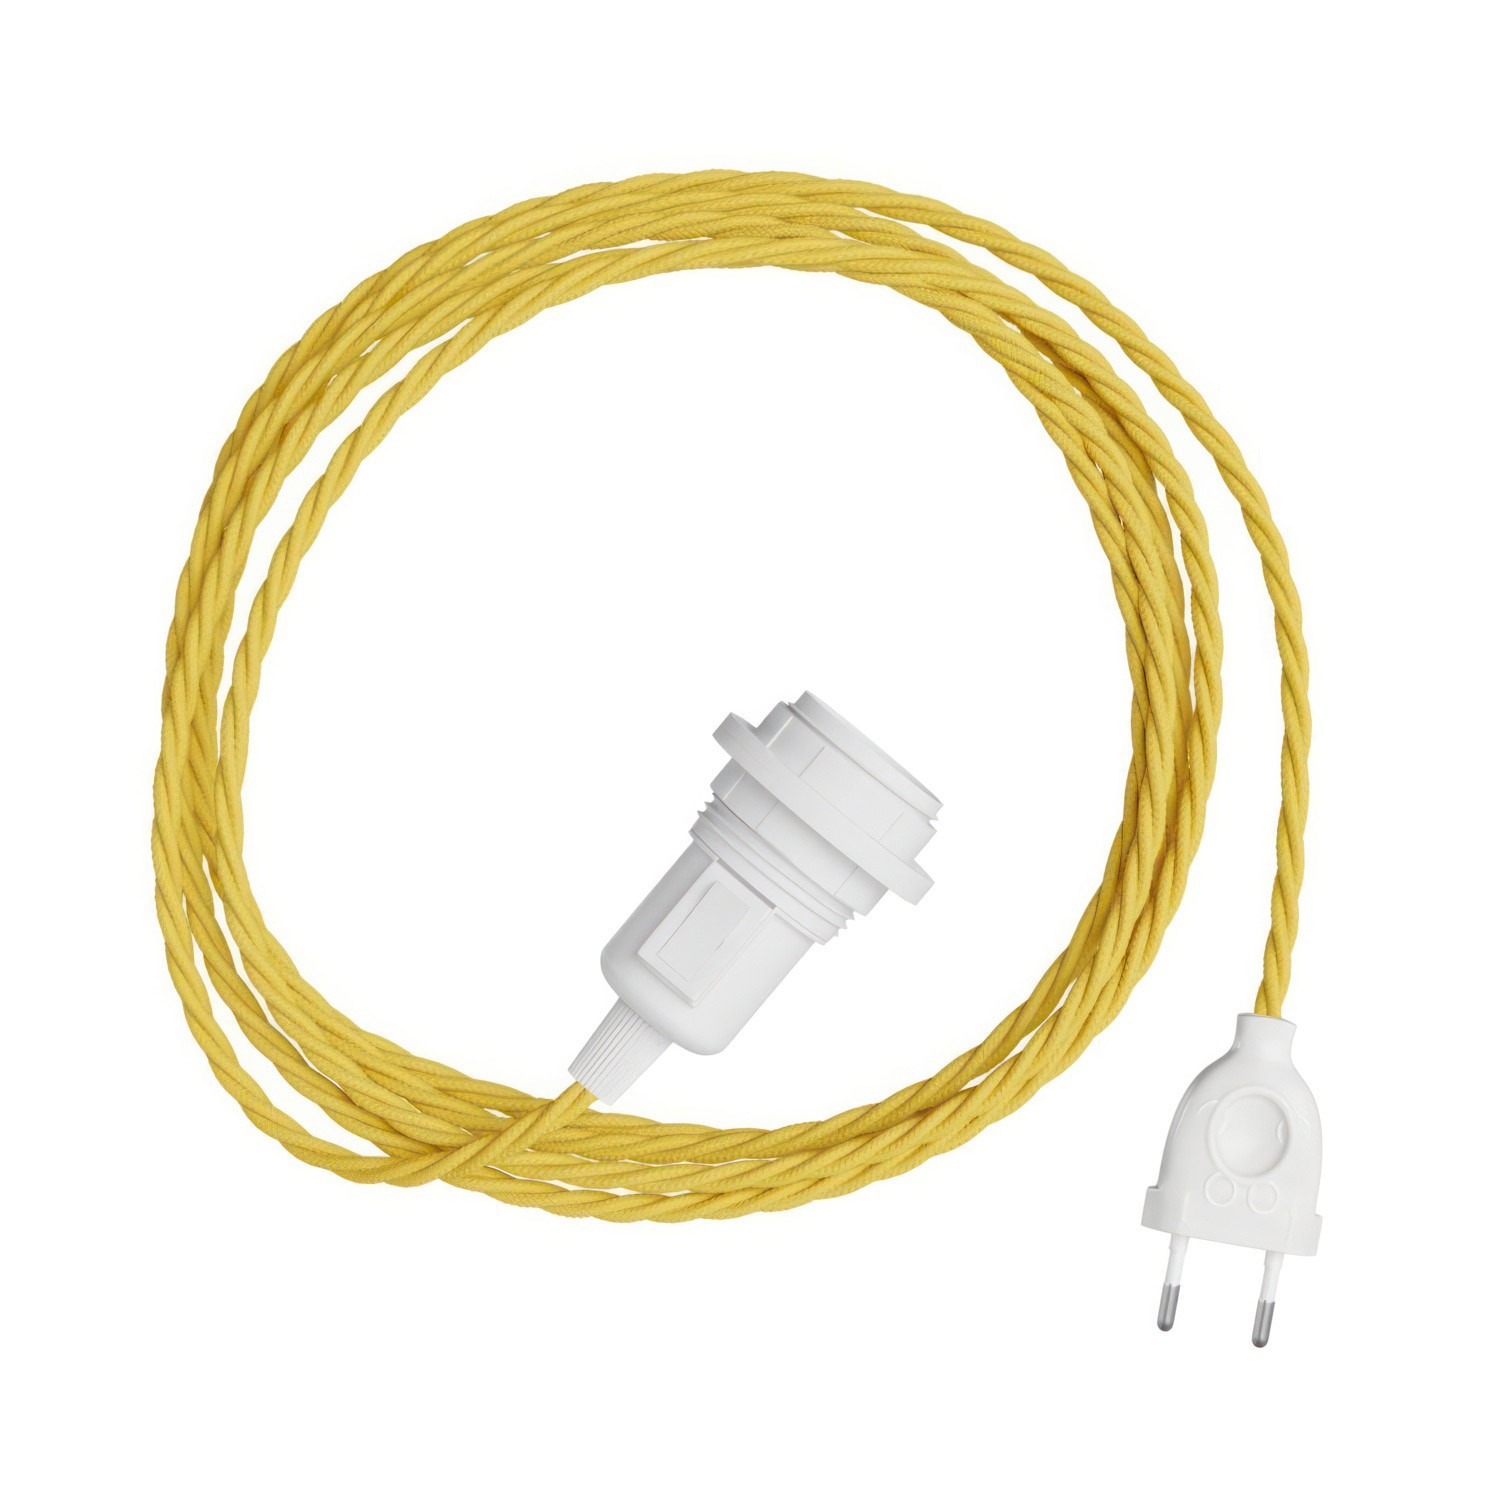 Snake Twisted für Lampenschirm - Plug-in Leuchte mit geflochtenem Textilkabel